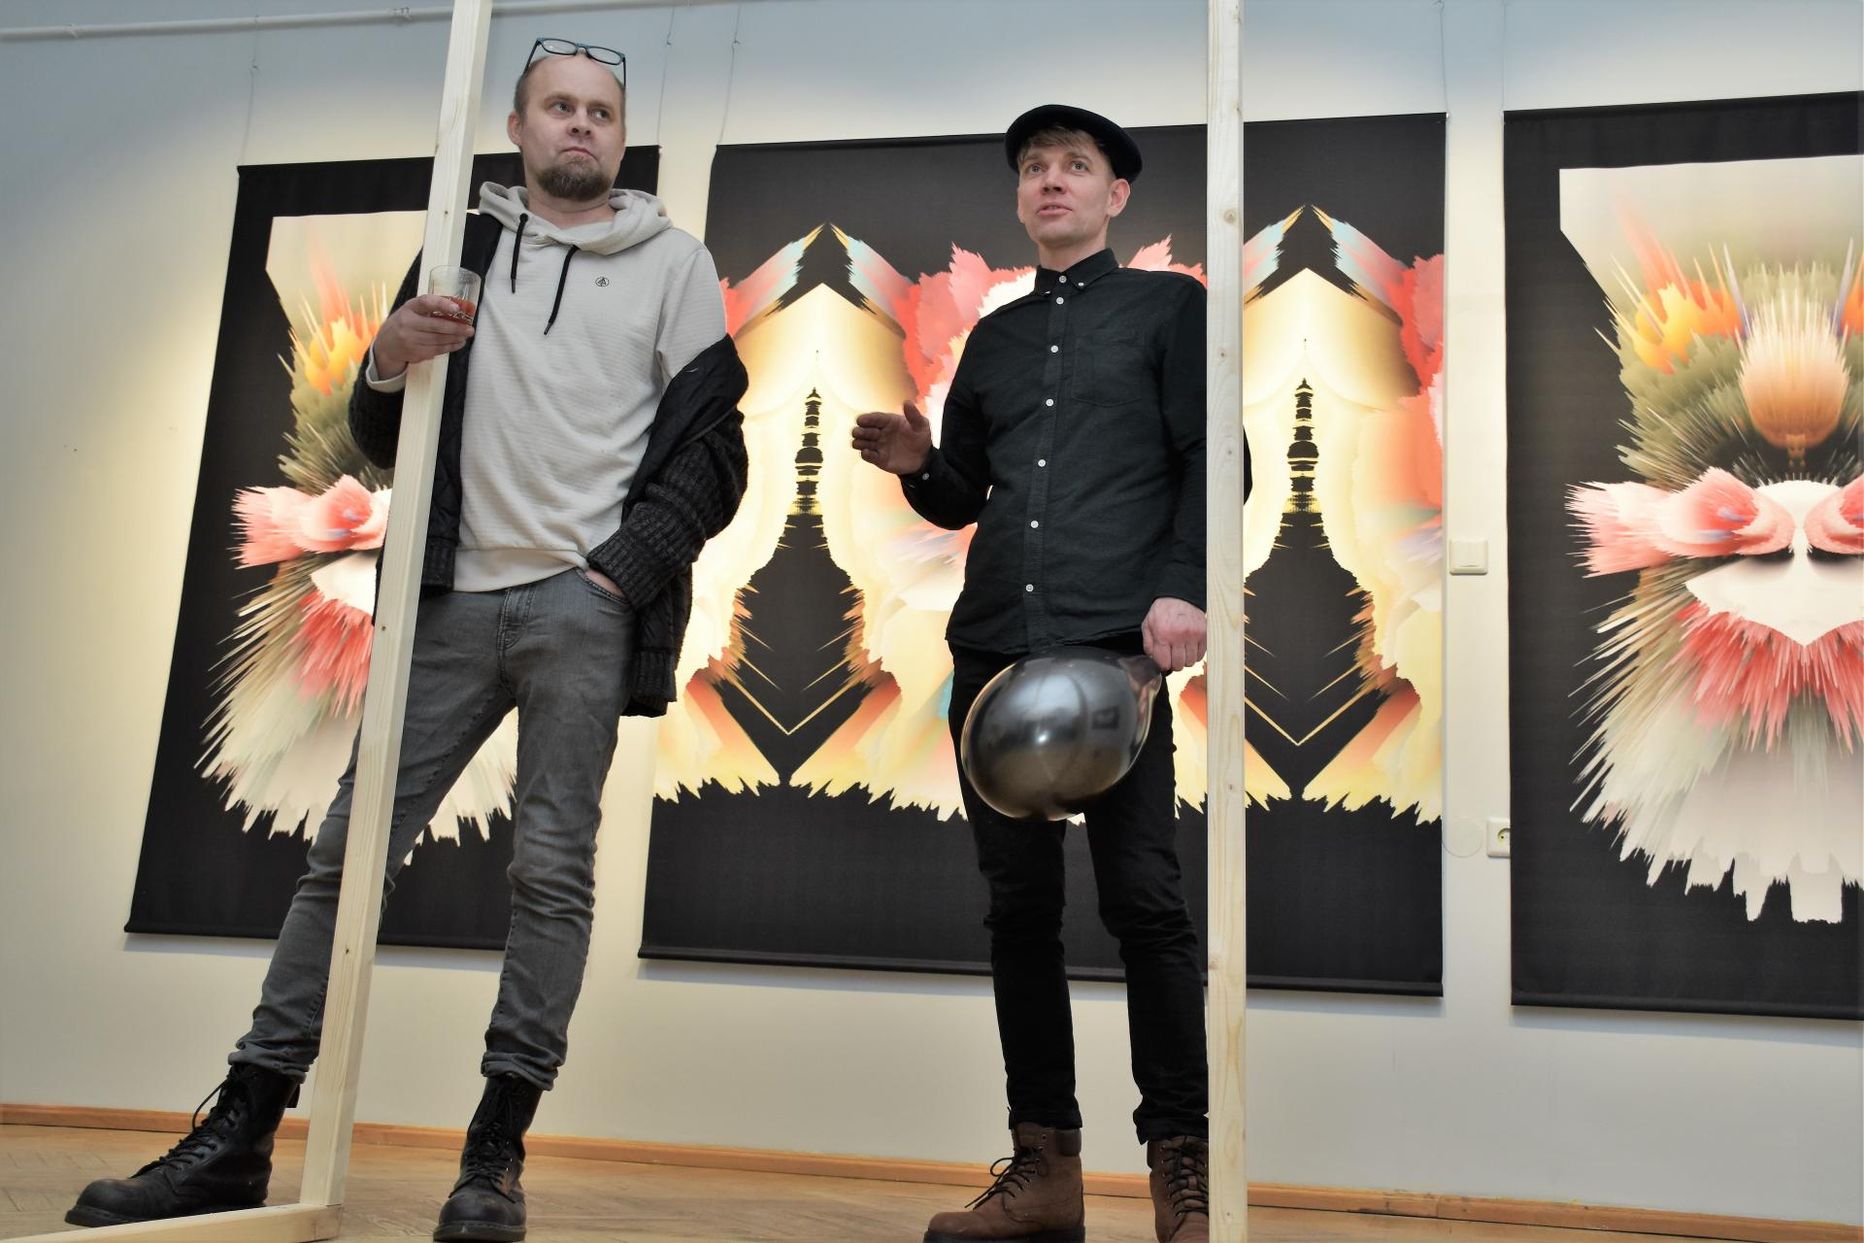 Jan Leo Grau ja Indrek Aija näitusel “Ühenduses ükskõiksusega” Pärnu linnagaleriis raekojas.